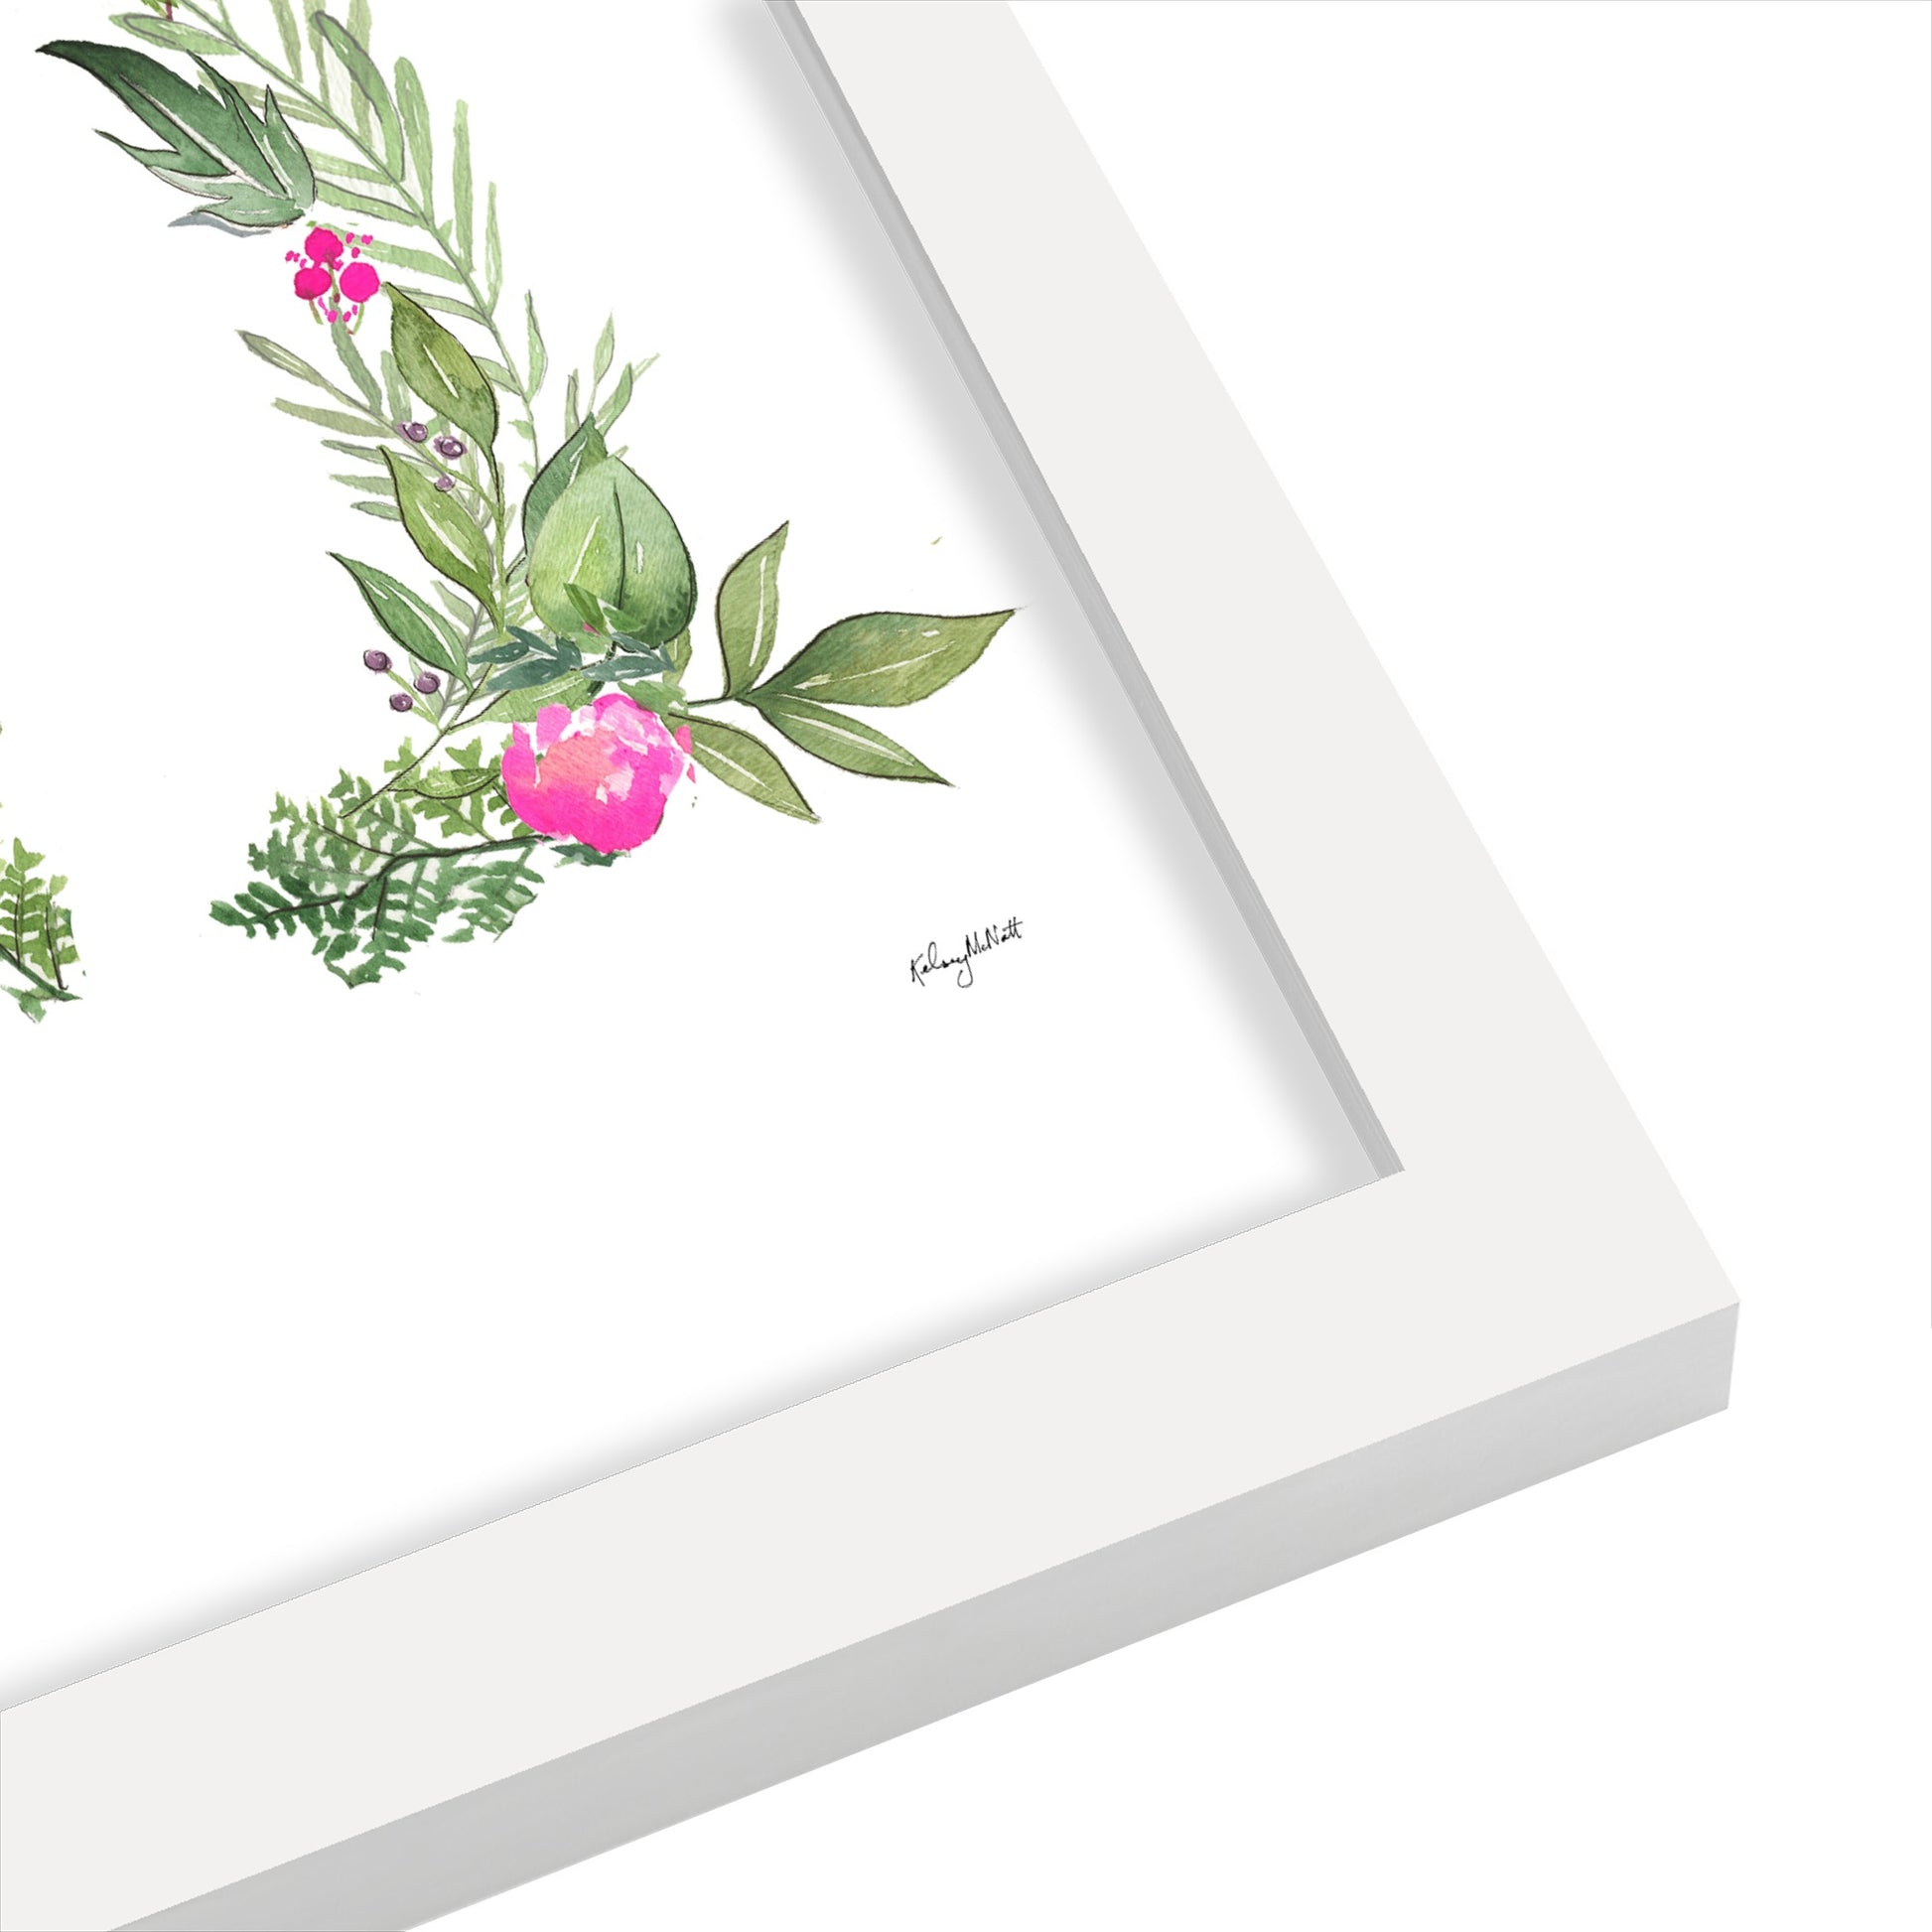 Botanical Letter M by Kelsey Mcnatt - Framed Print - Framed Print - Americanflat